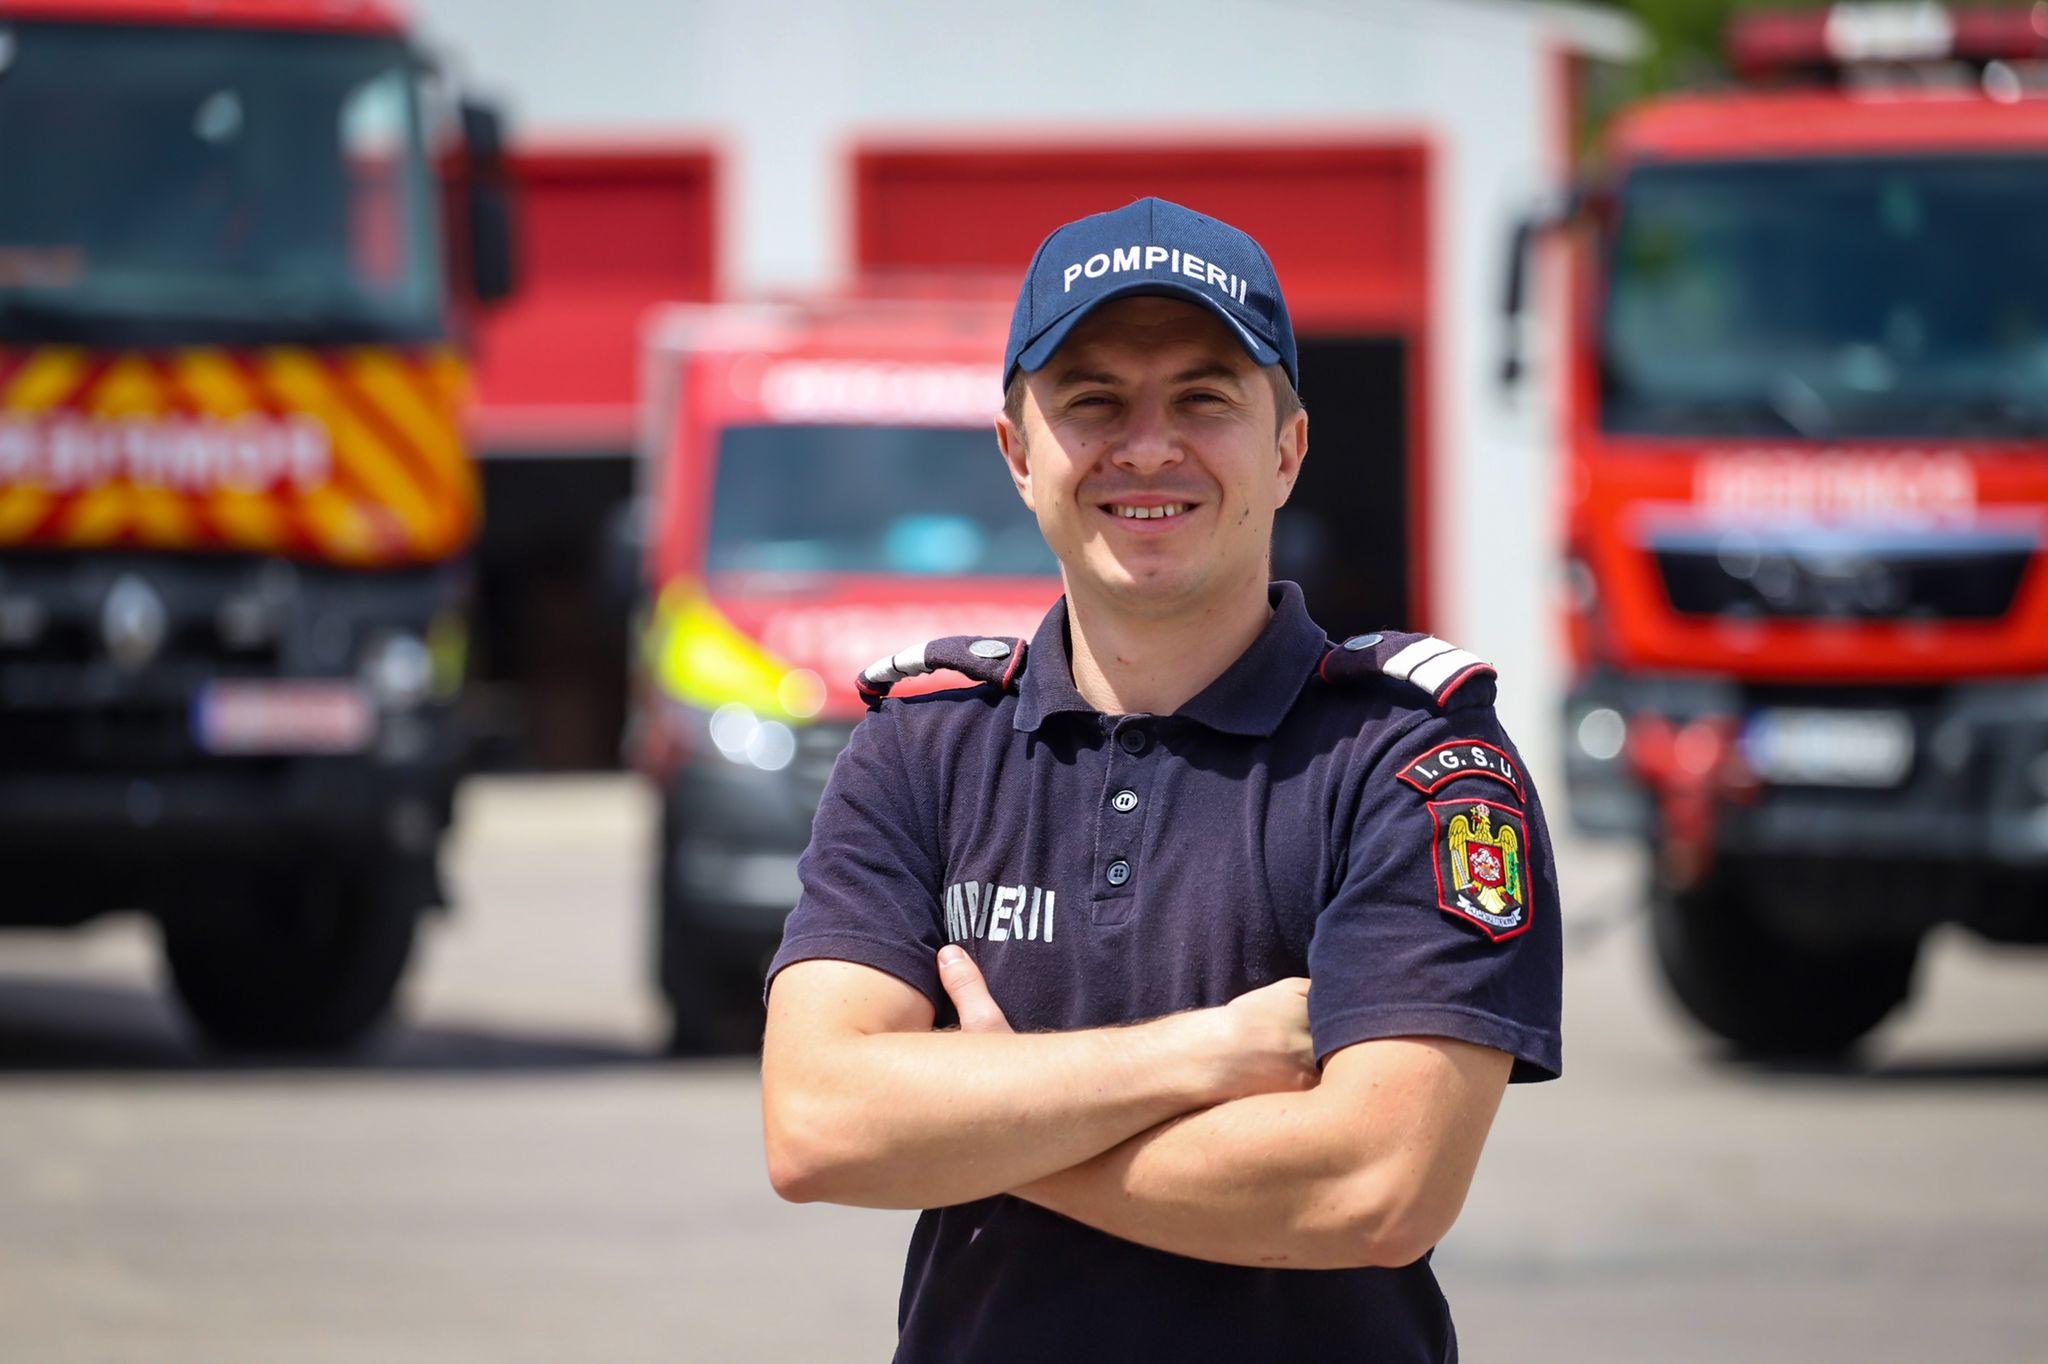 Pompierii tulceni au nevoie de șoferi tineri pentru autospeciale